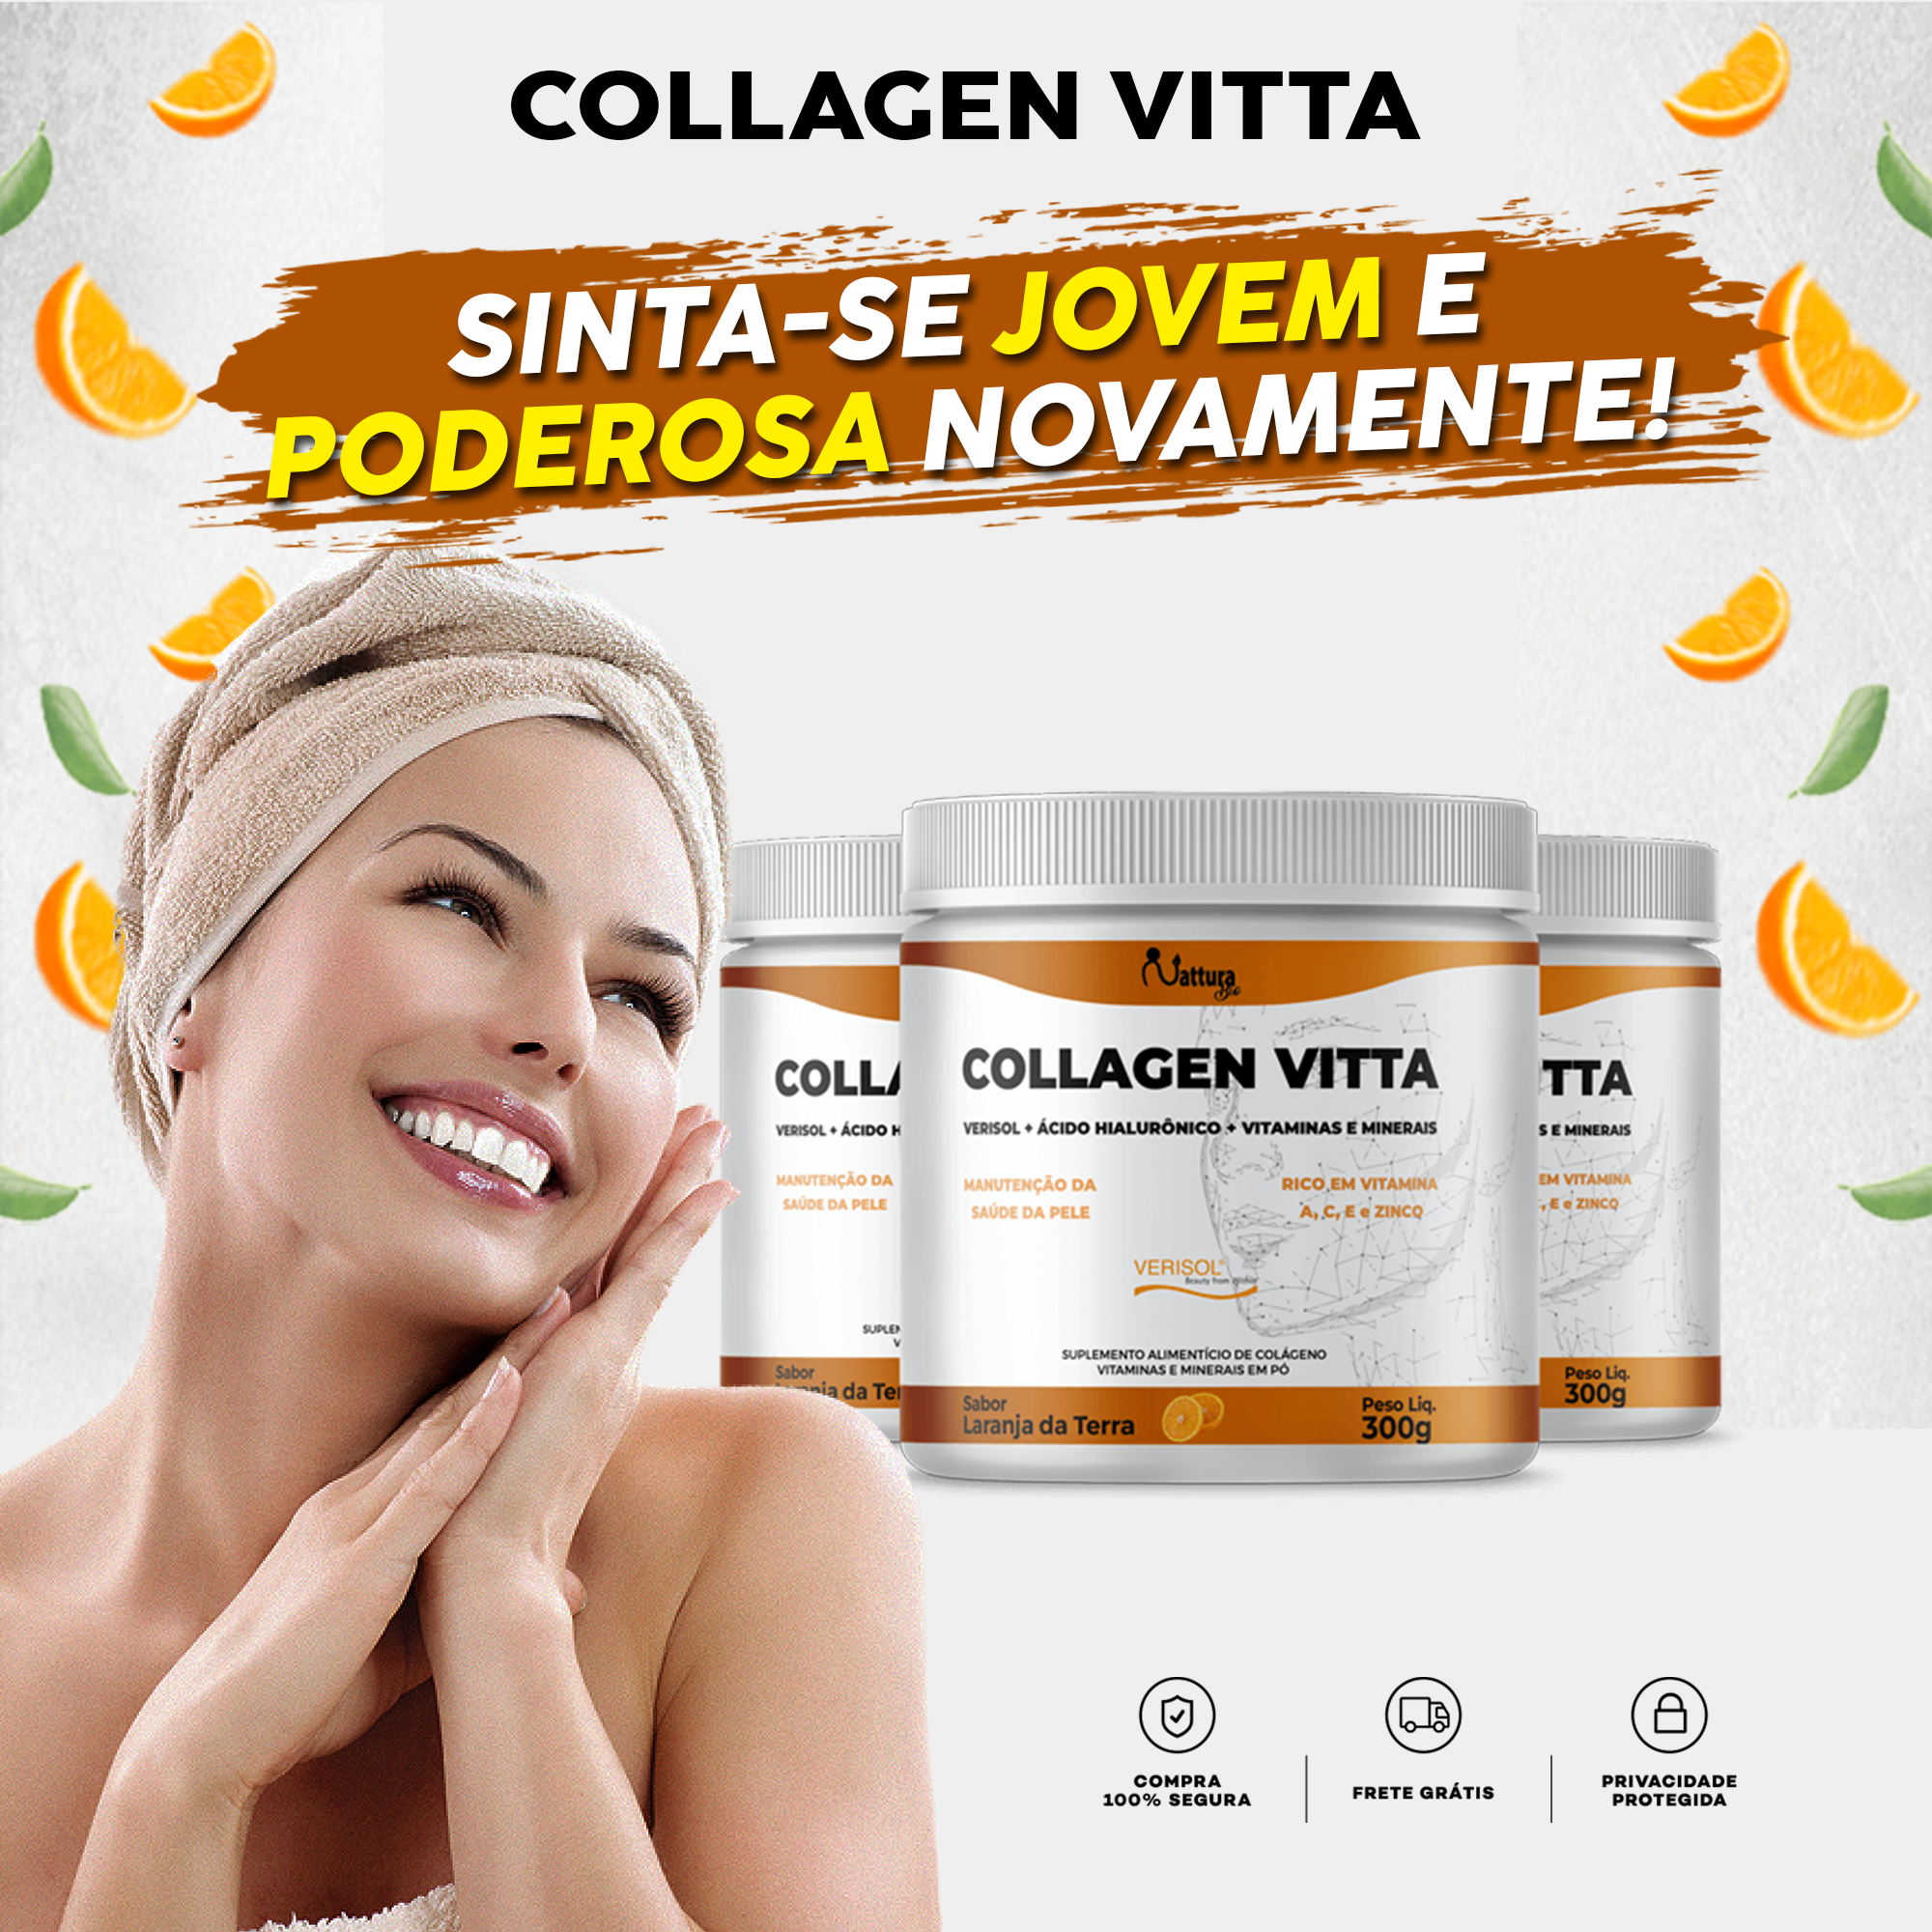 Clique aqui e conheça o Collagen Vitta